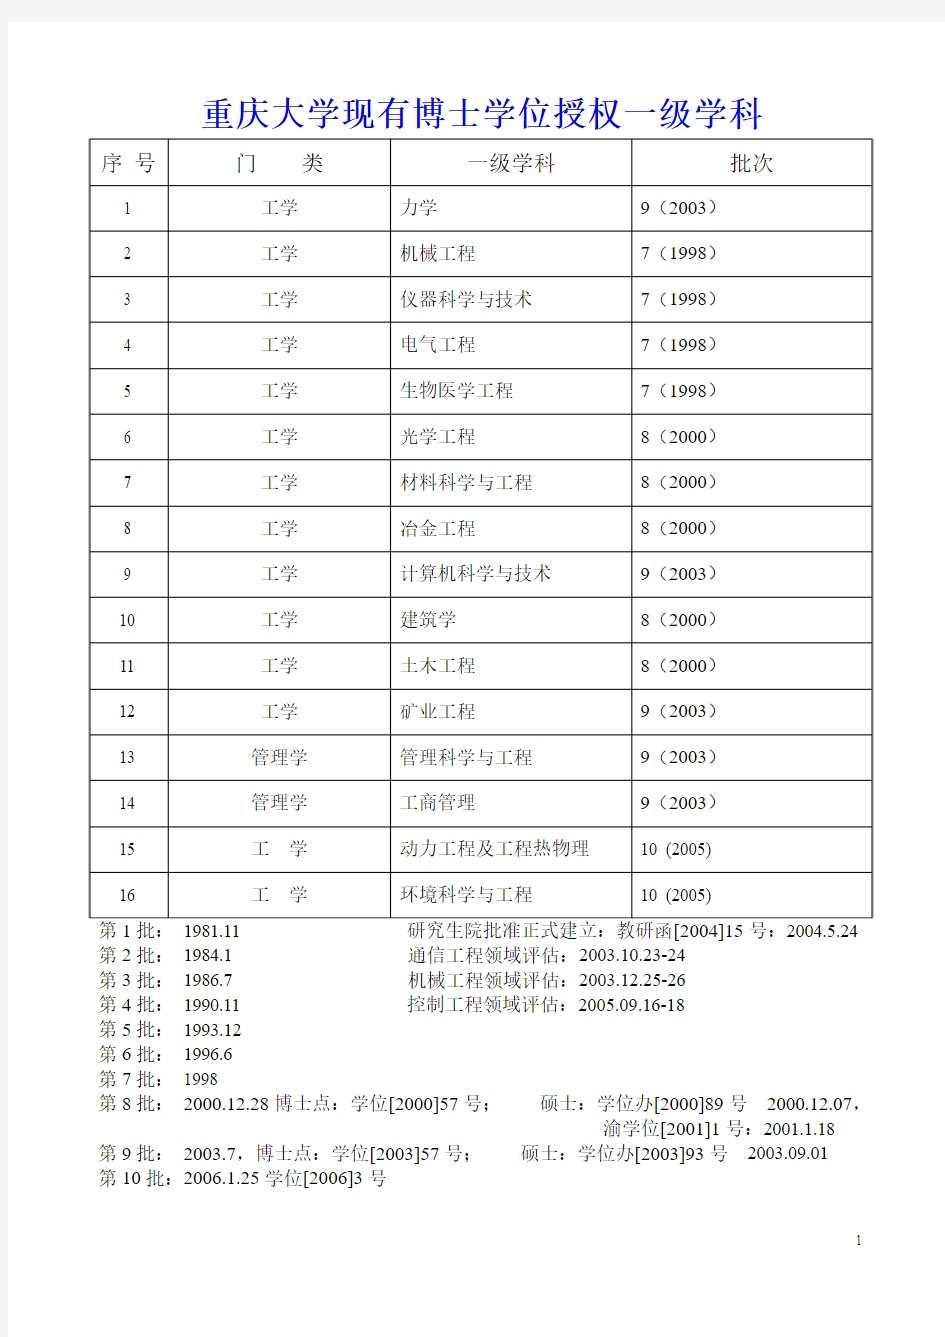 重庆大学现有学科点、专业学位及重点学科(2008年4月更新)